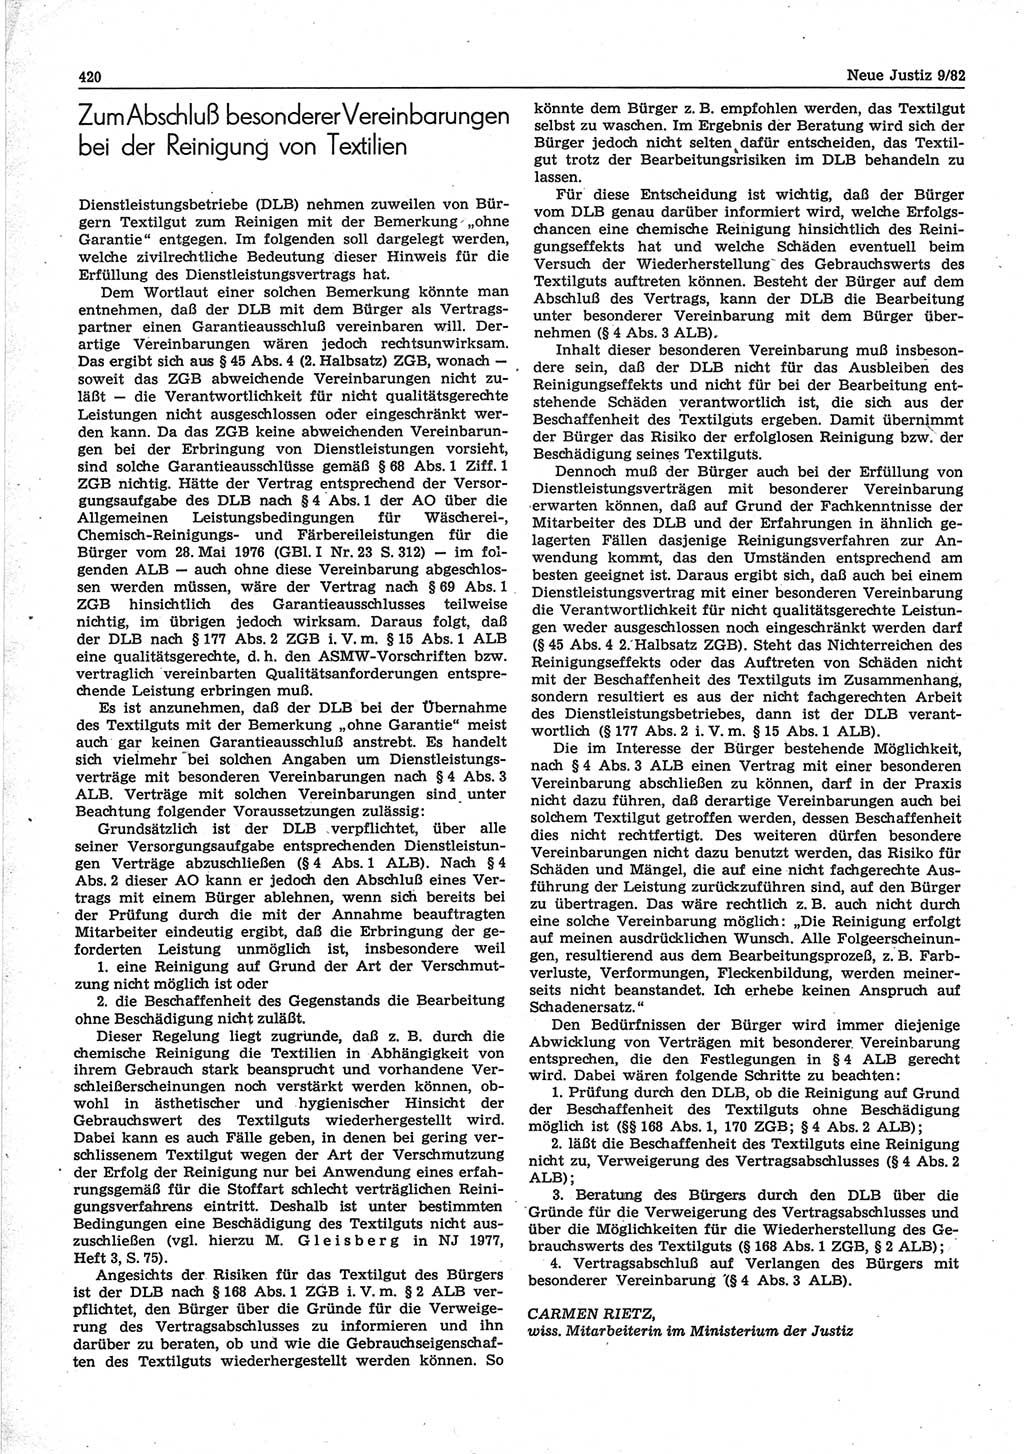 Neue Justiz (NJ), Zeitschrift für sozialistisches Recht und Gesetzlichkeit [Deutsche Demokratische Republik (DDR)], 36. Jahrgang 1982, Seite 420 (NJ DDR 1982, S. 420)